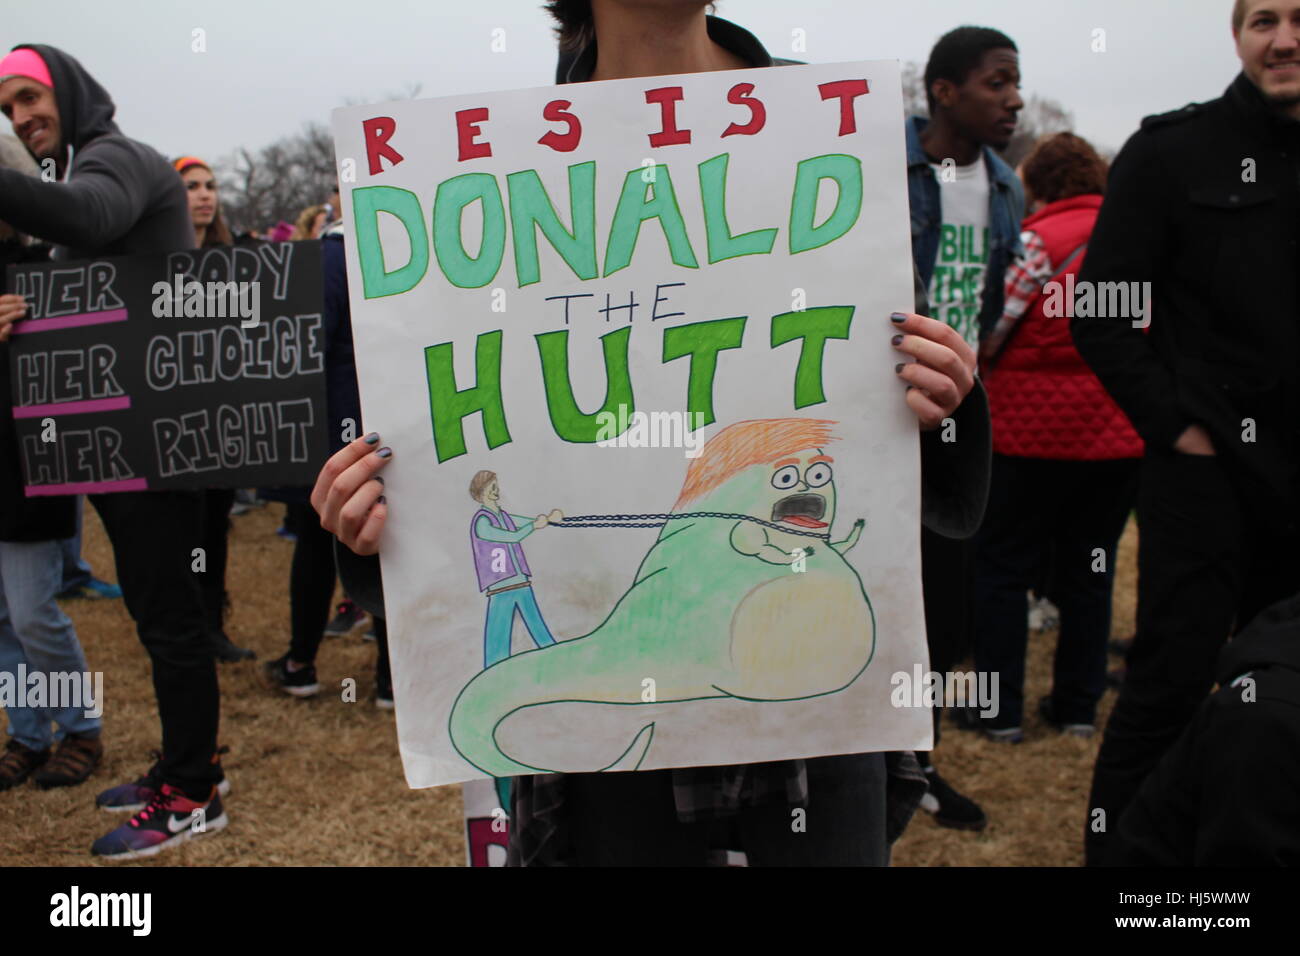 Distrikt von Columbia, USA. 21 Jan, 2017. Eine Demonstrantin hält ein Schild, Präsident Donald Trump als Star Wars Charakter Jabba der Hutt zurück durch eine Kette mit der Bildunterschrift "SIST DONALD DER HUTT' gehalten wird. Stockfoto